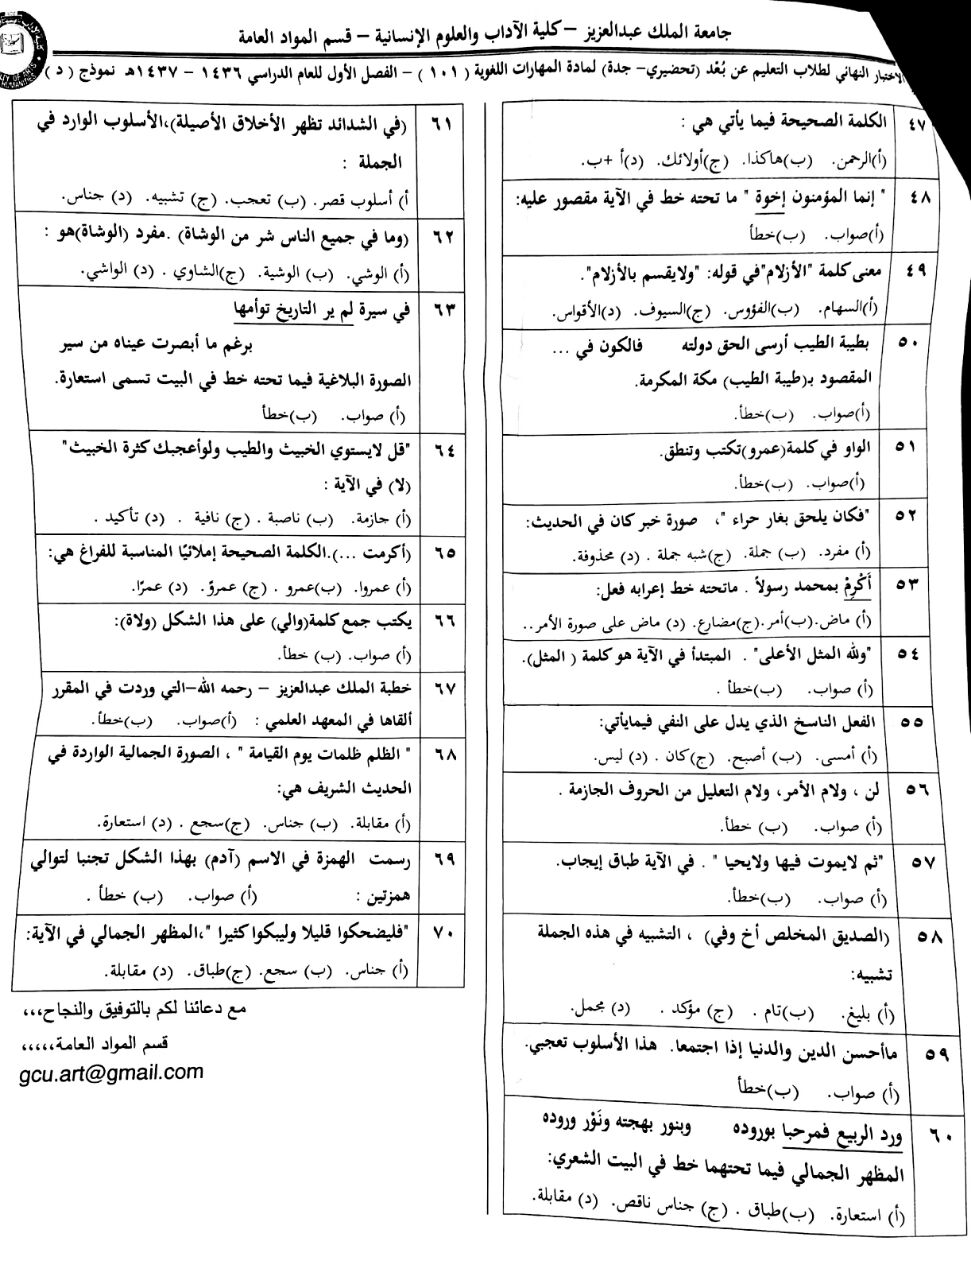 اسئلة المهارات اللغوية arab 101 الفصل الأول 1437هـ نموذج د عن بعد